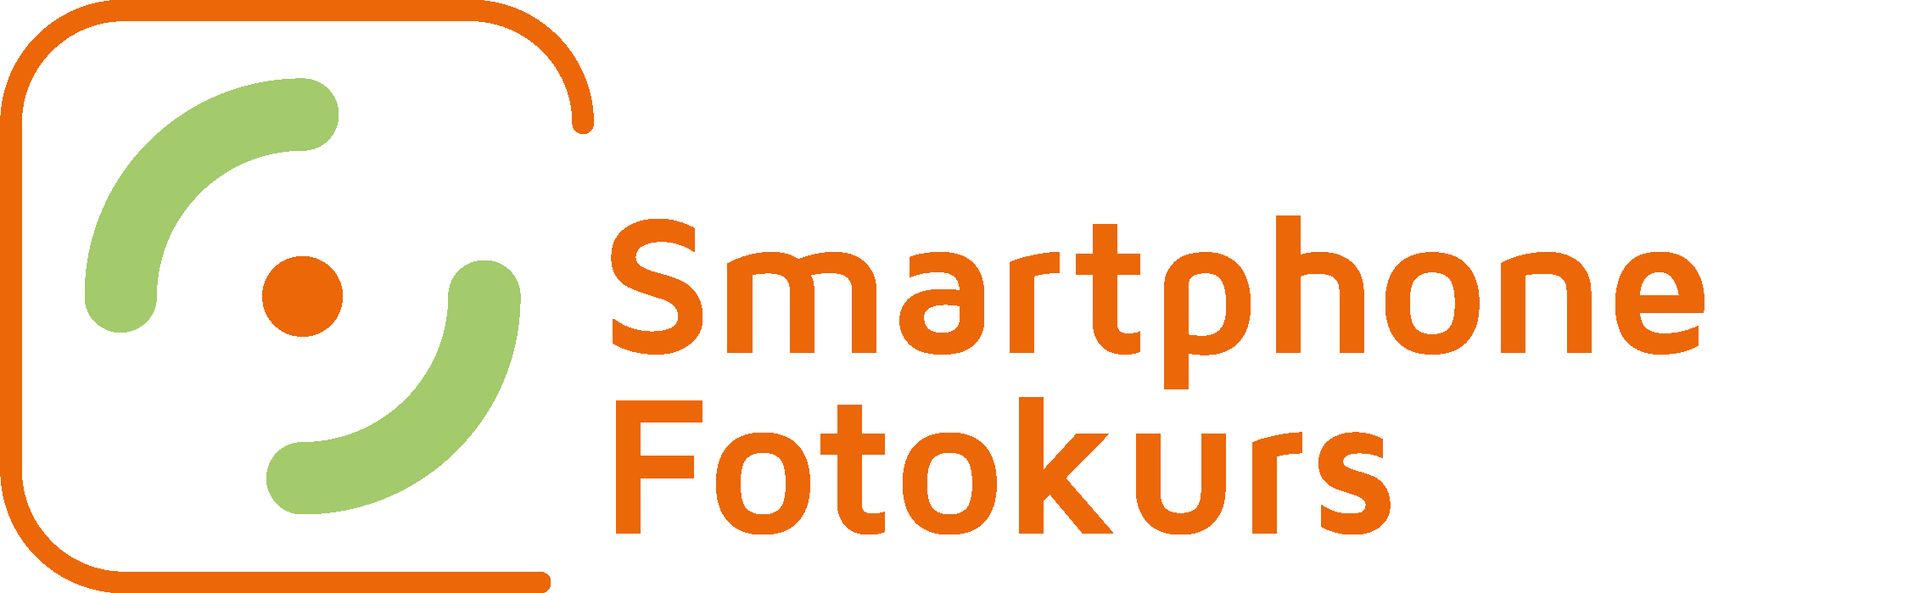 Das Smartphone Fotokurs Logo stellt die Frontlinse einer Smartphonekamera dar.